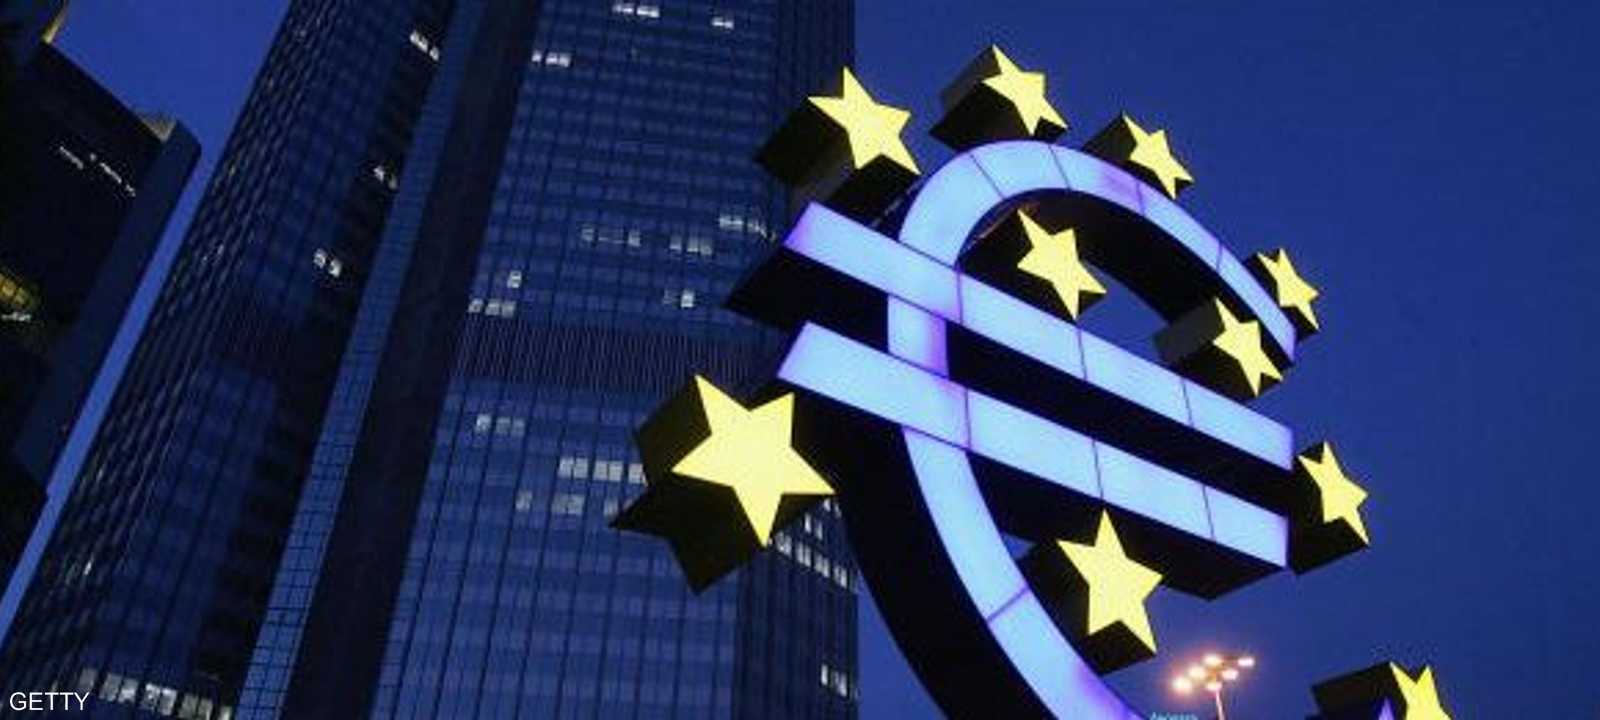 رمز اليورو أمام مقر بنك أوروبا المركزي في فرانكفورت